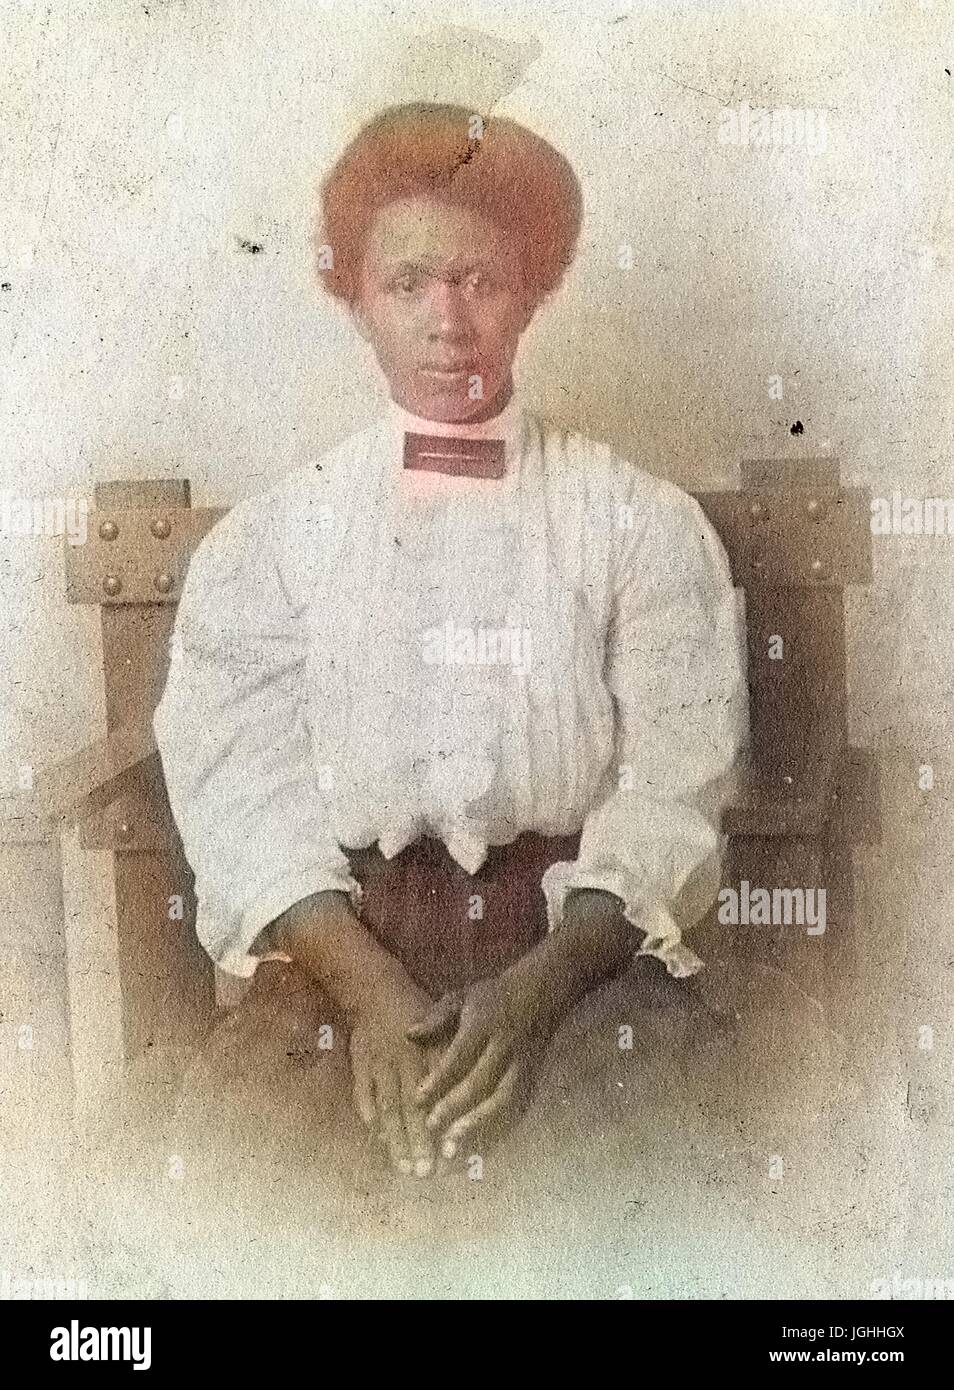 Taille bis Porträt sitzenden afroamerikanische Frau, trägt eine weiße Bluse und karierten Kleid mit einem ernsten Gesichtsausdruck Hände ruhten auf Schoß, 1920. Hinweis: Bild wurde digital eingefärbt wurde mit einem modernen Verfahren. Farben können Zeit ungenau sein. Stockfoto